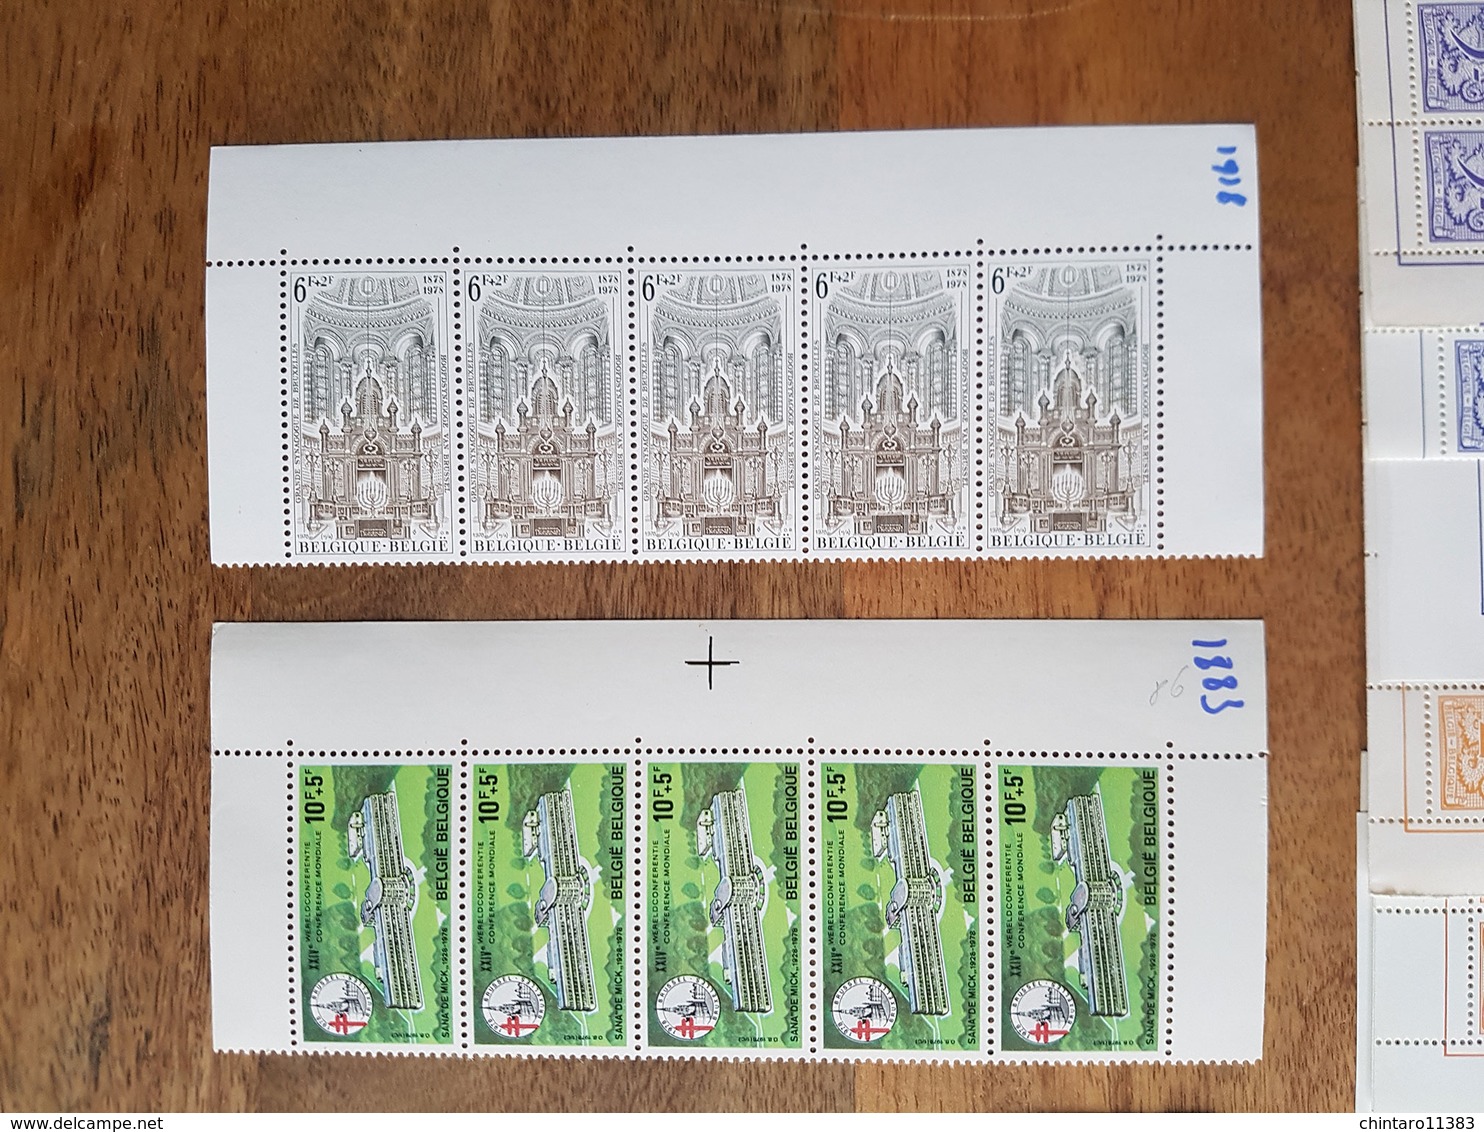 Lot feuilles complètes de timbres Belgique - Année 1978